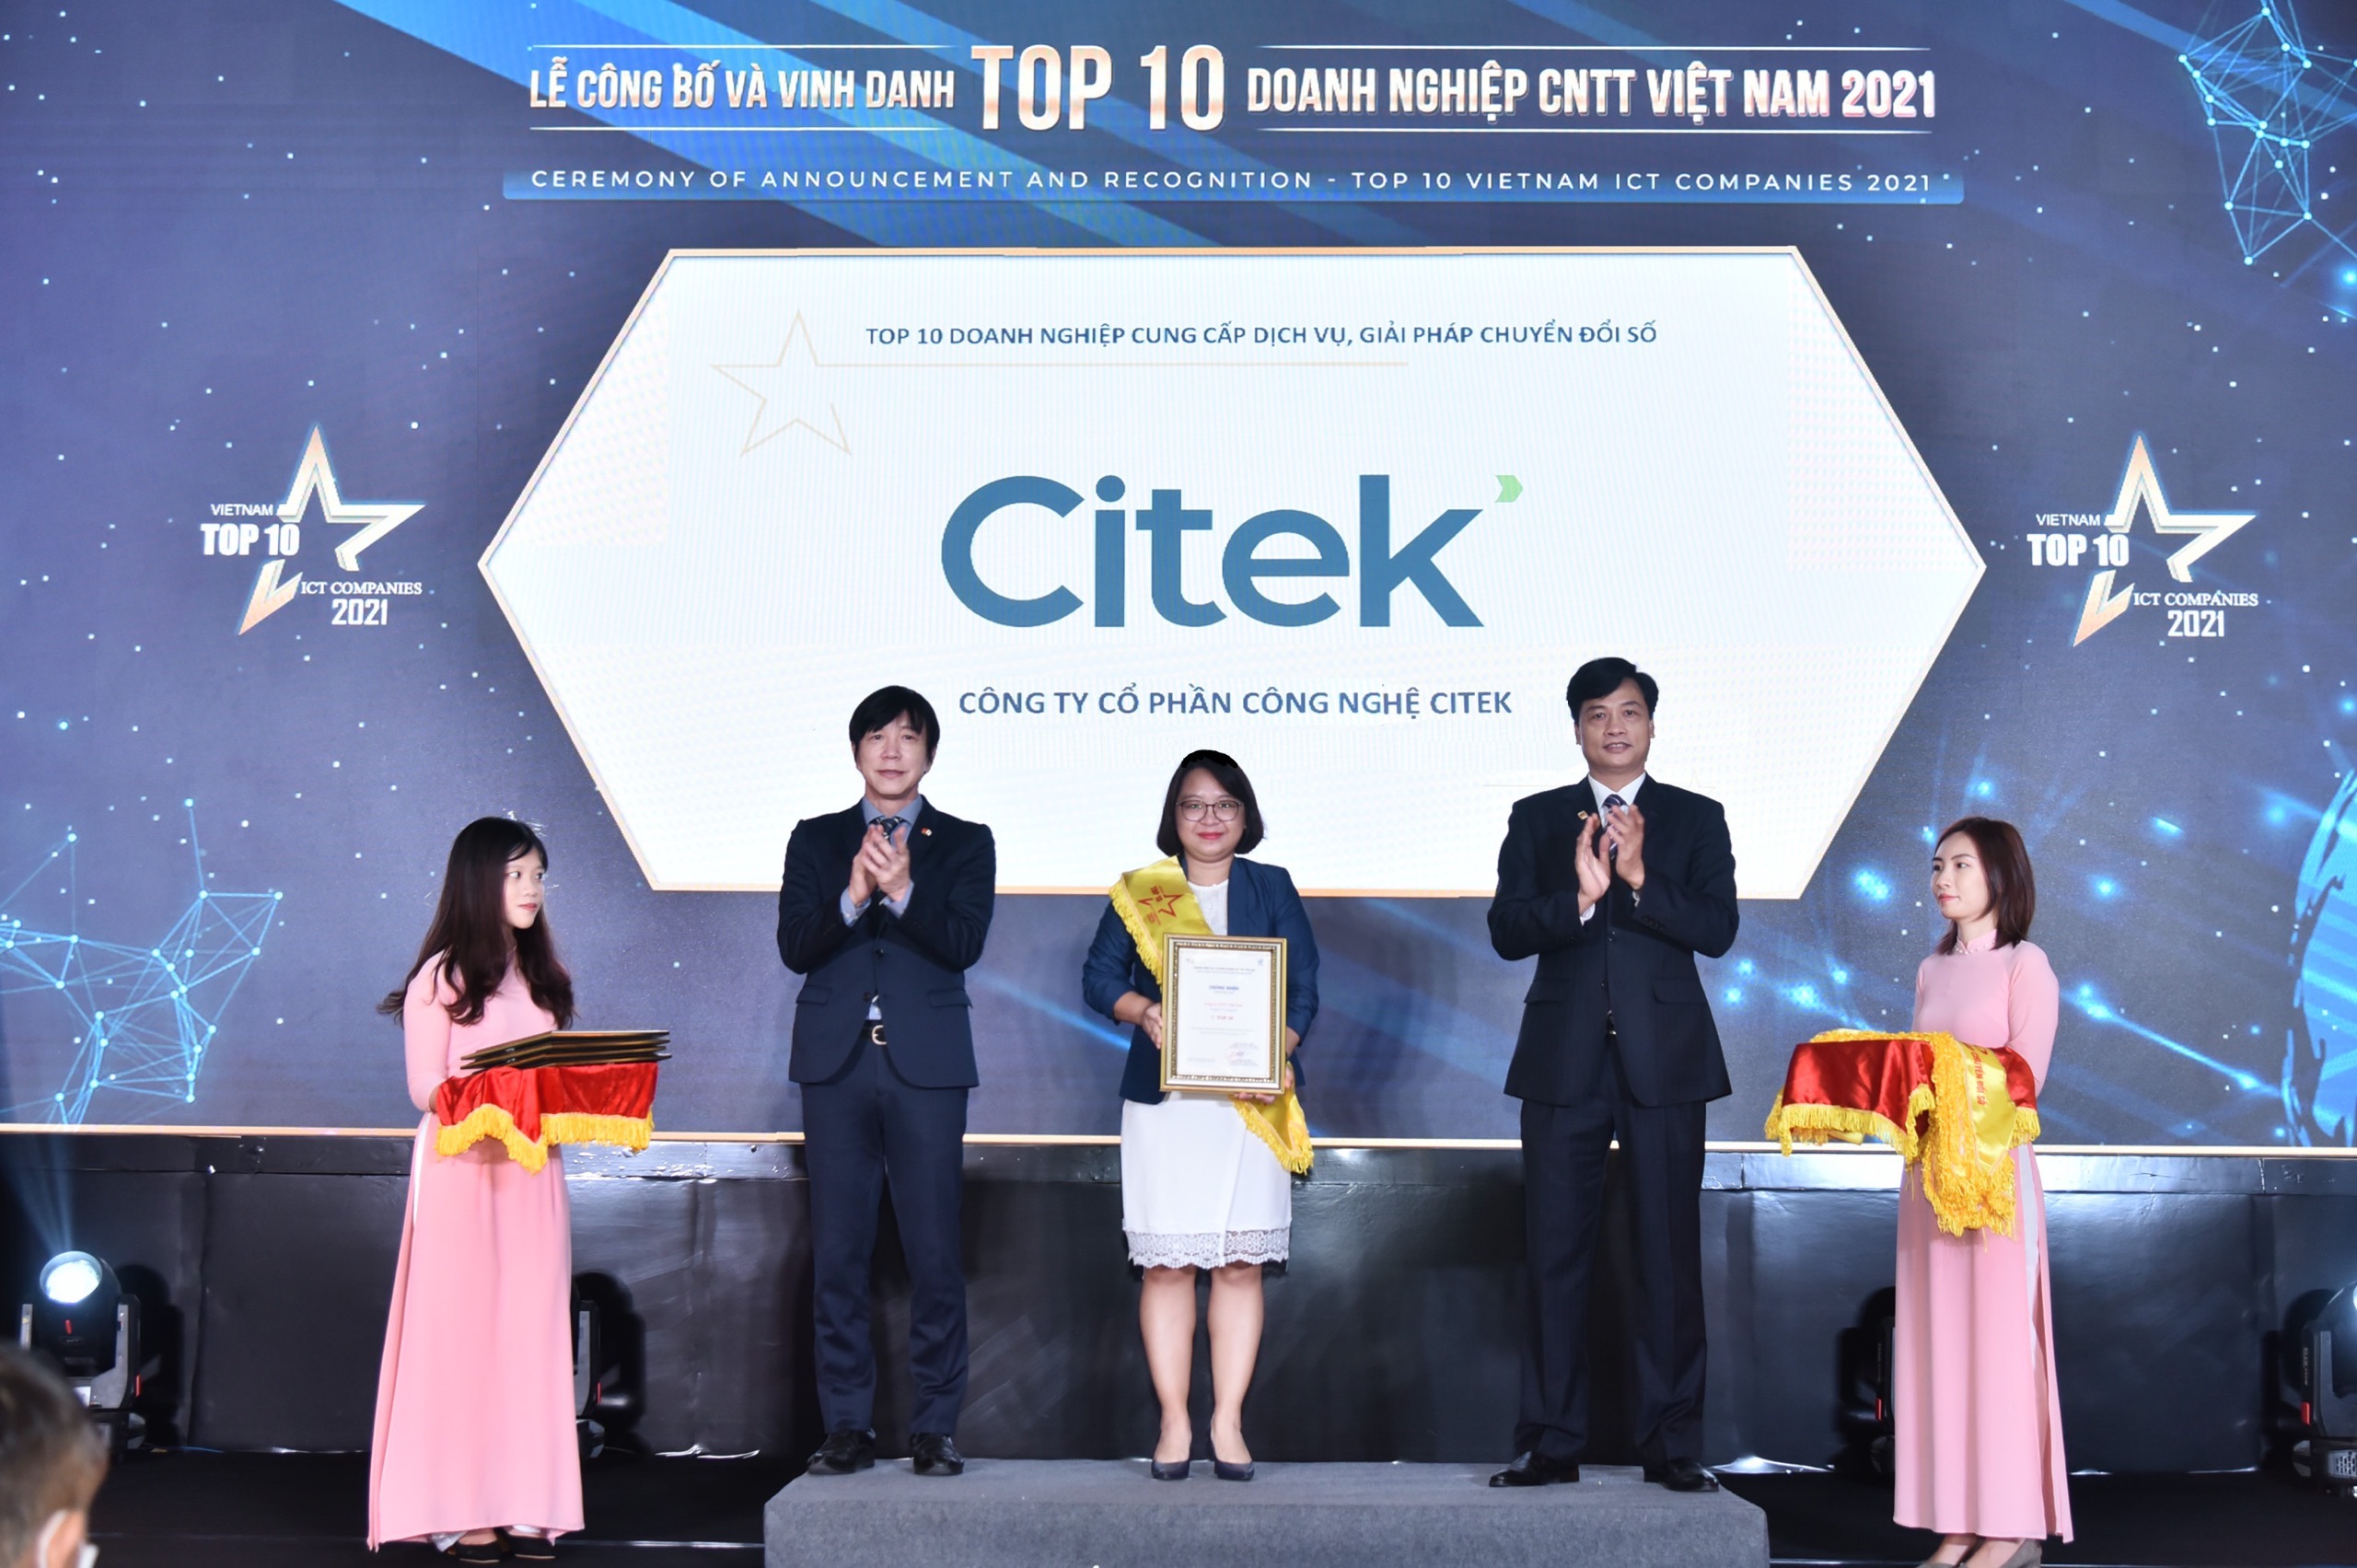 Citek-TOP-10-Doanh-Nghiệp-CNTT-Việt-Nam-2021-1